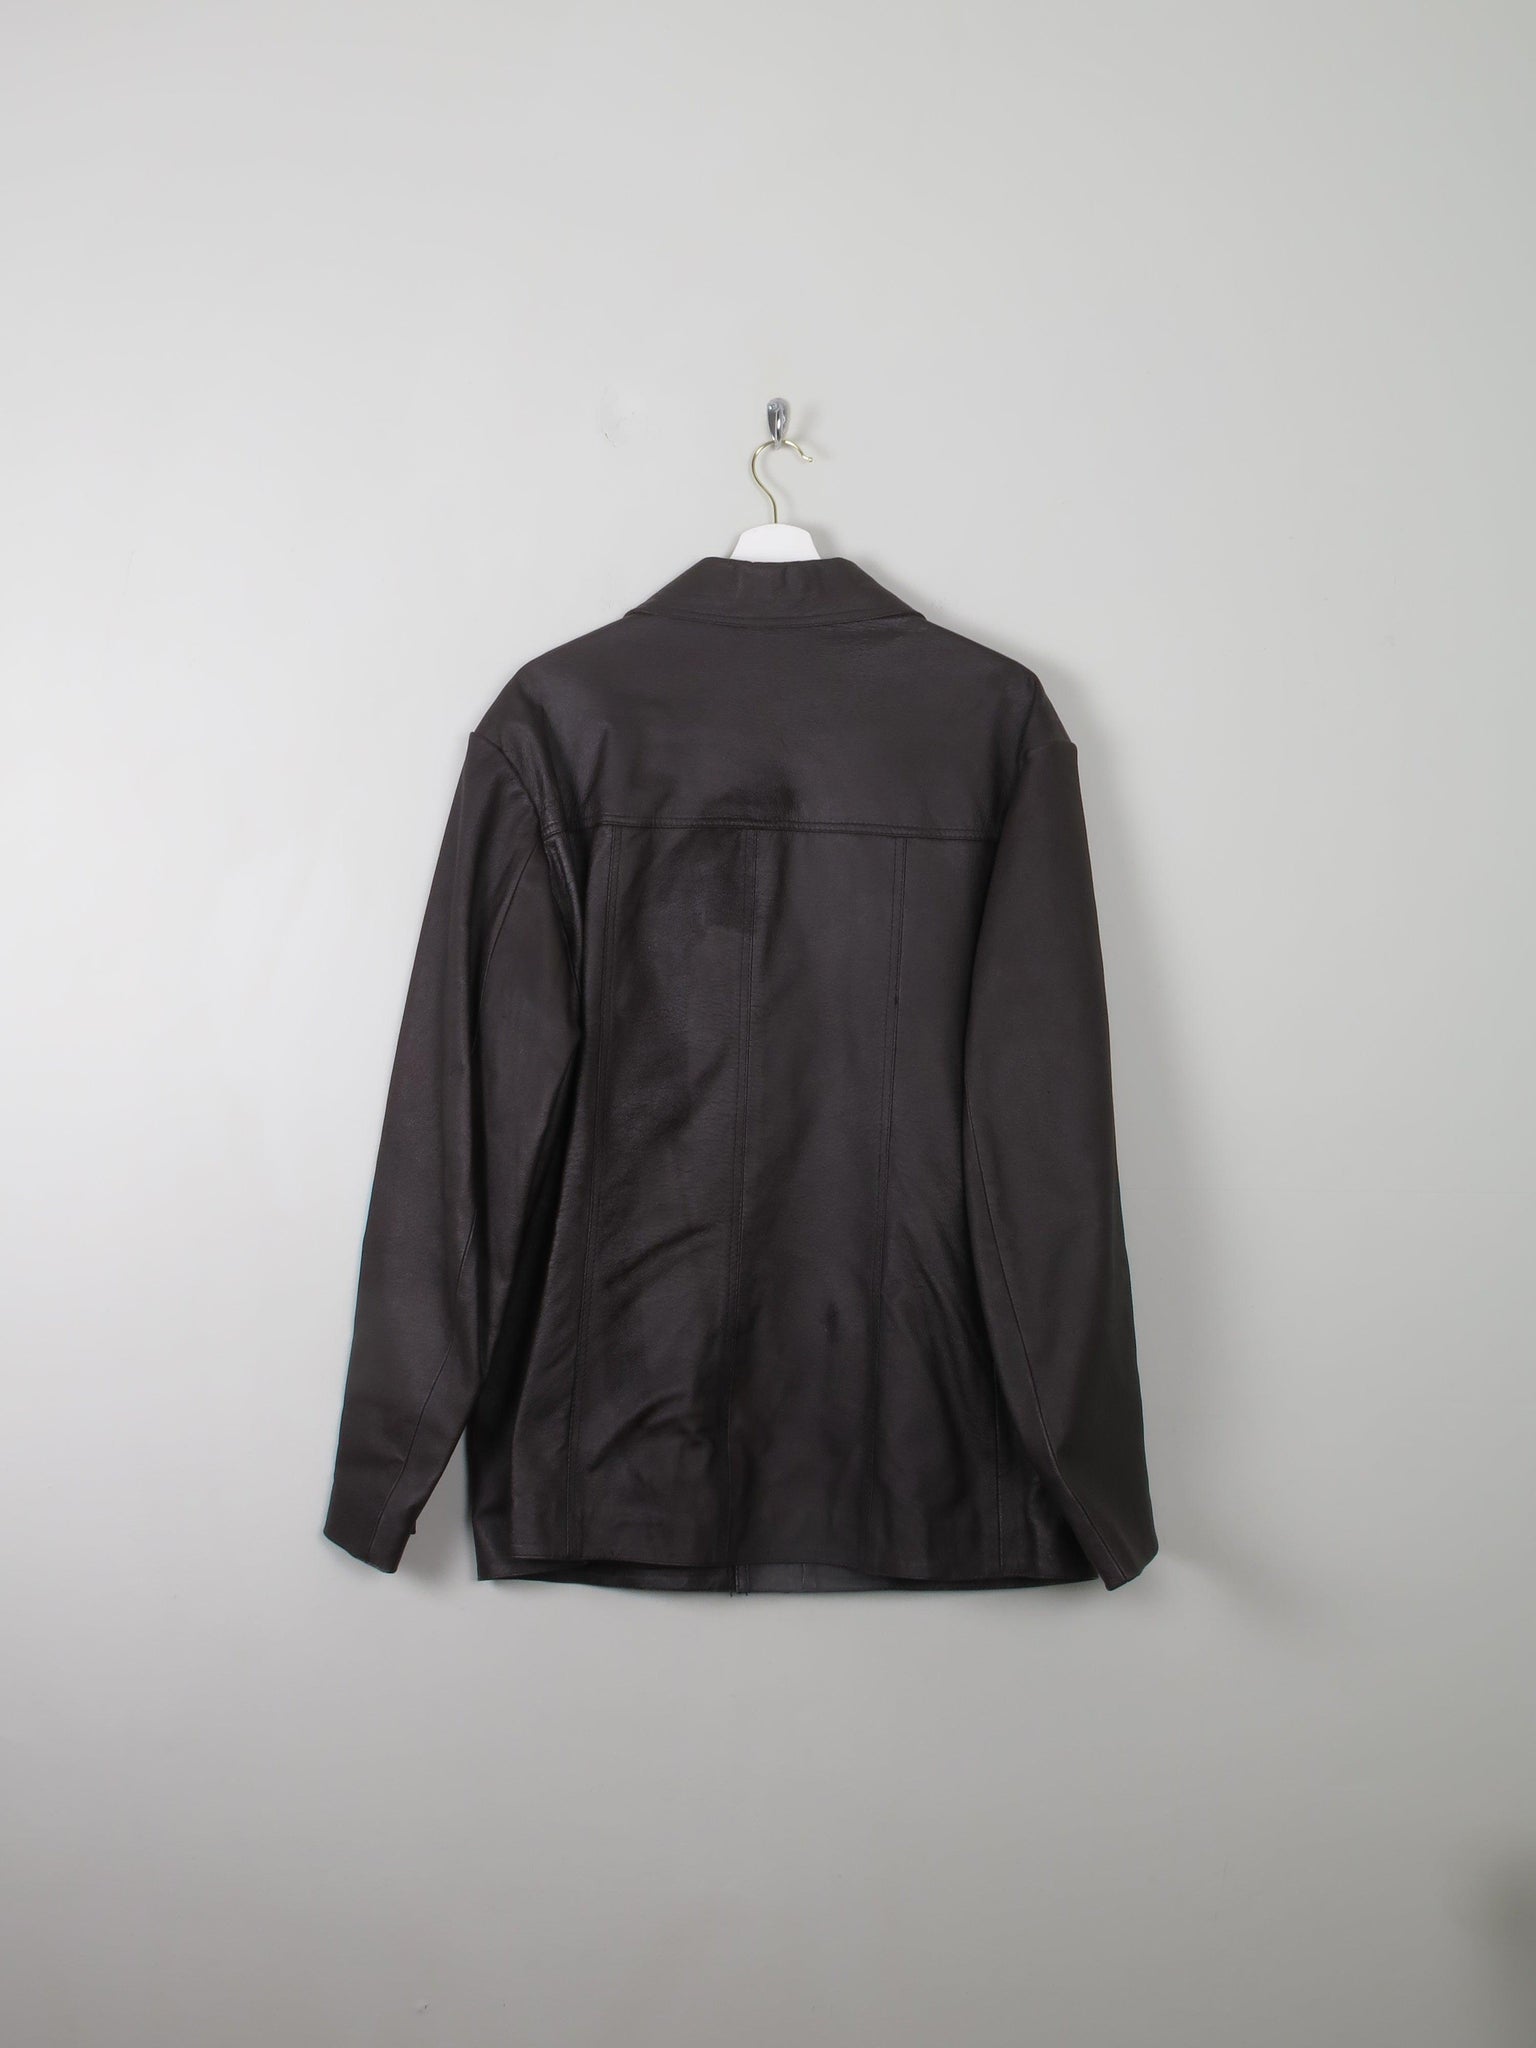 Men's Vintage Brown Leather Jacket L 44 - The Harlequin